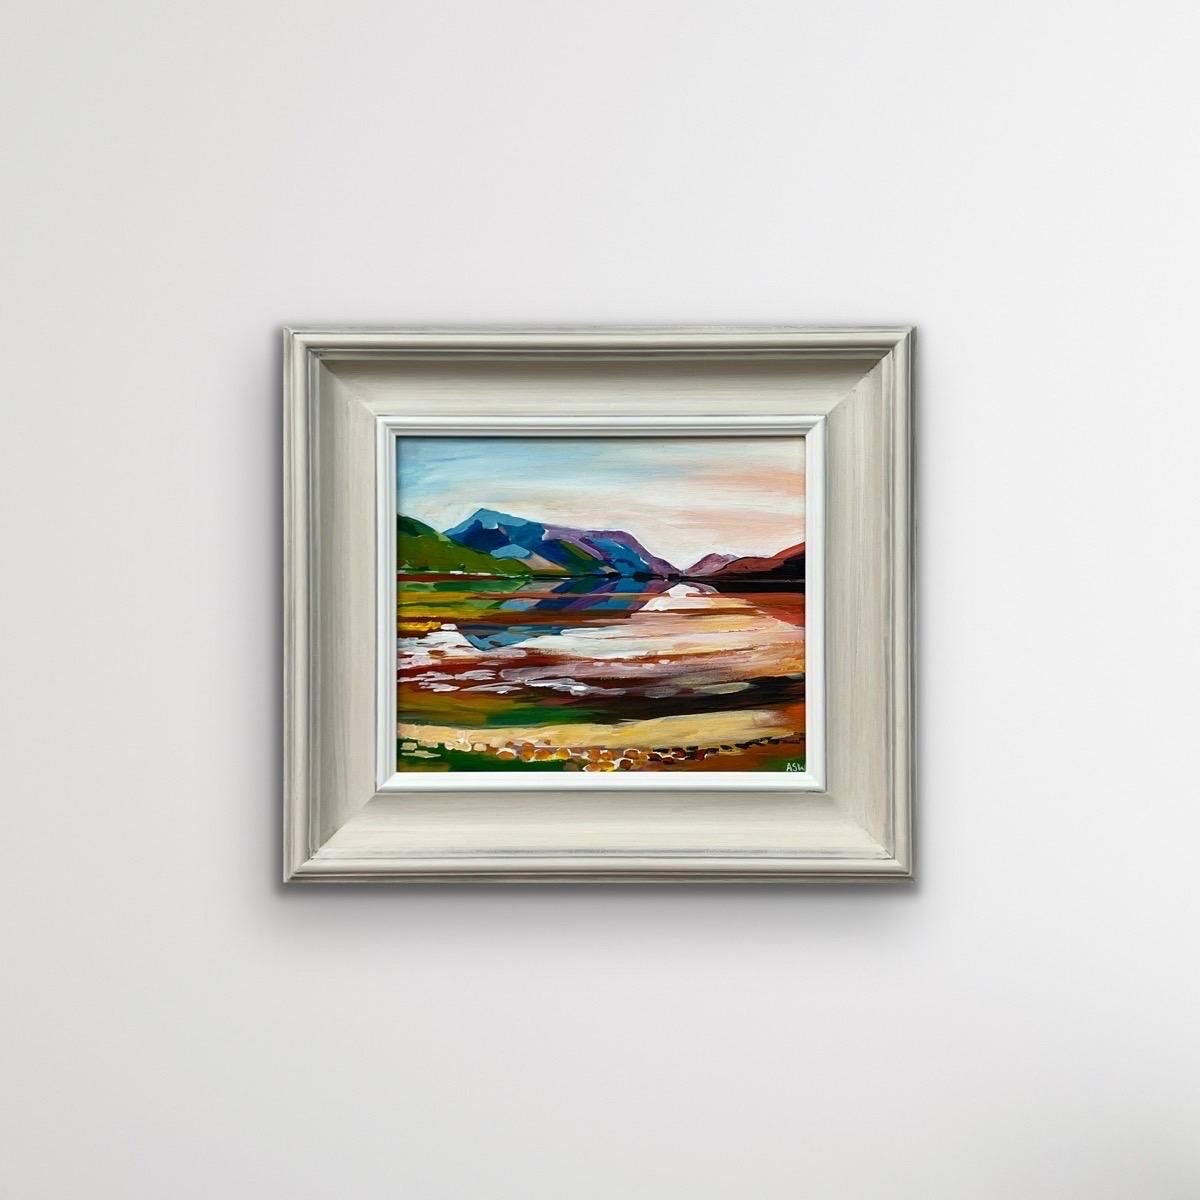 Peinture de paysage coloré du Loch Leven, Glen Coe dans les Highlands écossais par l'artiste britannique contemporaine de premier plan, Angela Wakefield. 

L'œuvre d'art mesure 12 x 10 pouces 
Le cadre mesure 18 x 16 pouces 

Angela Wakefield a fait